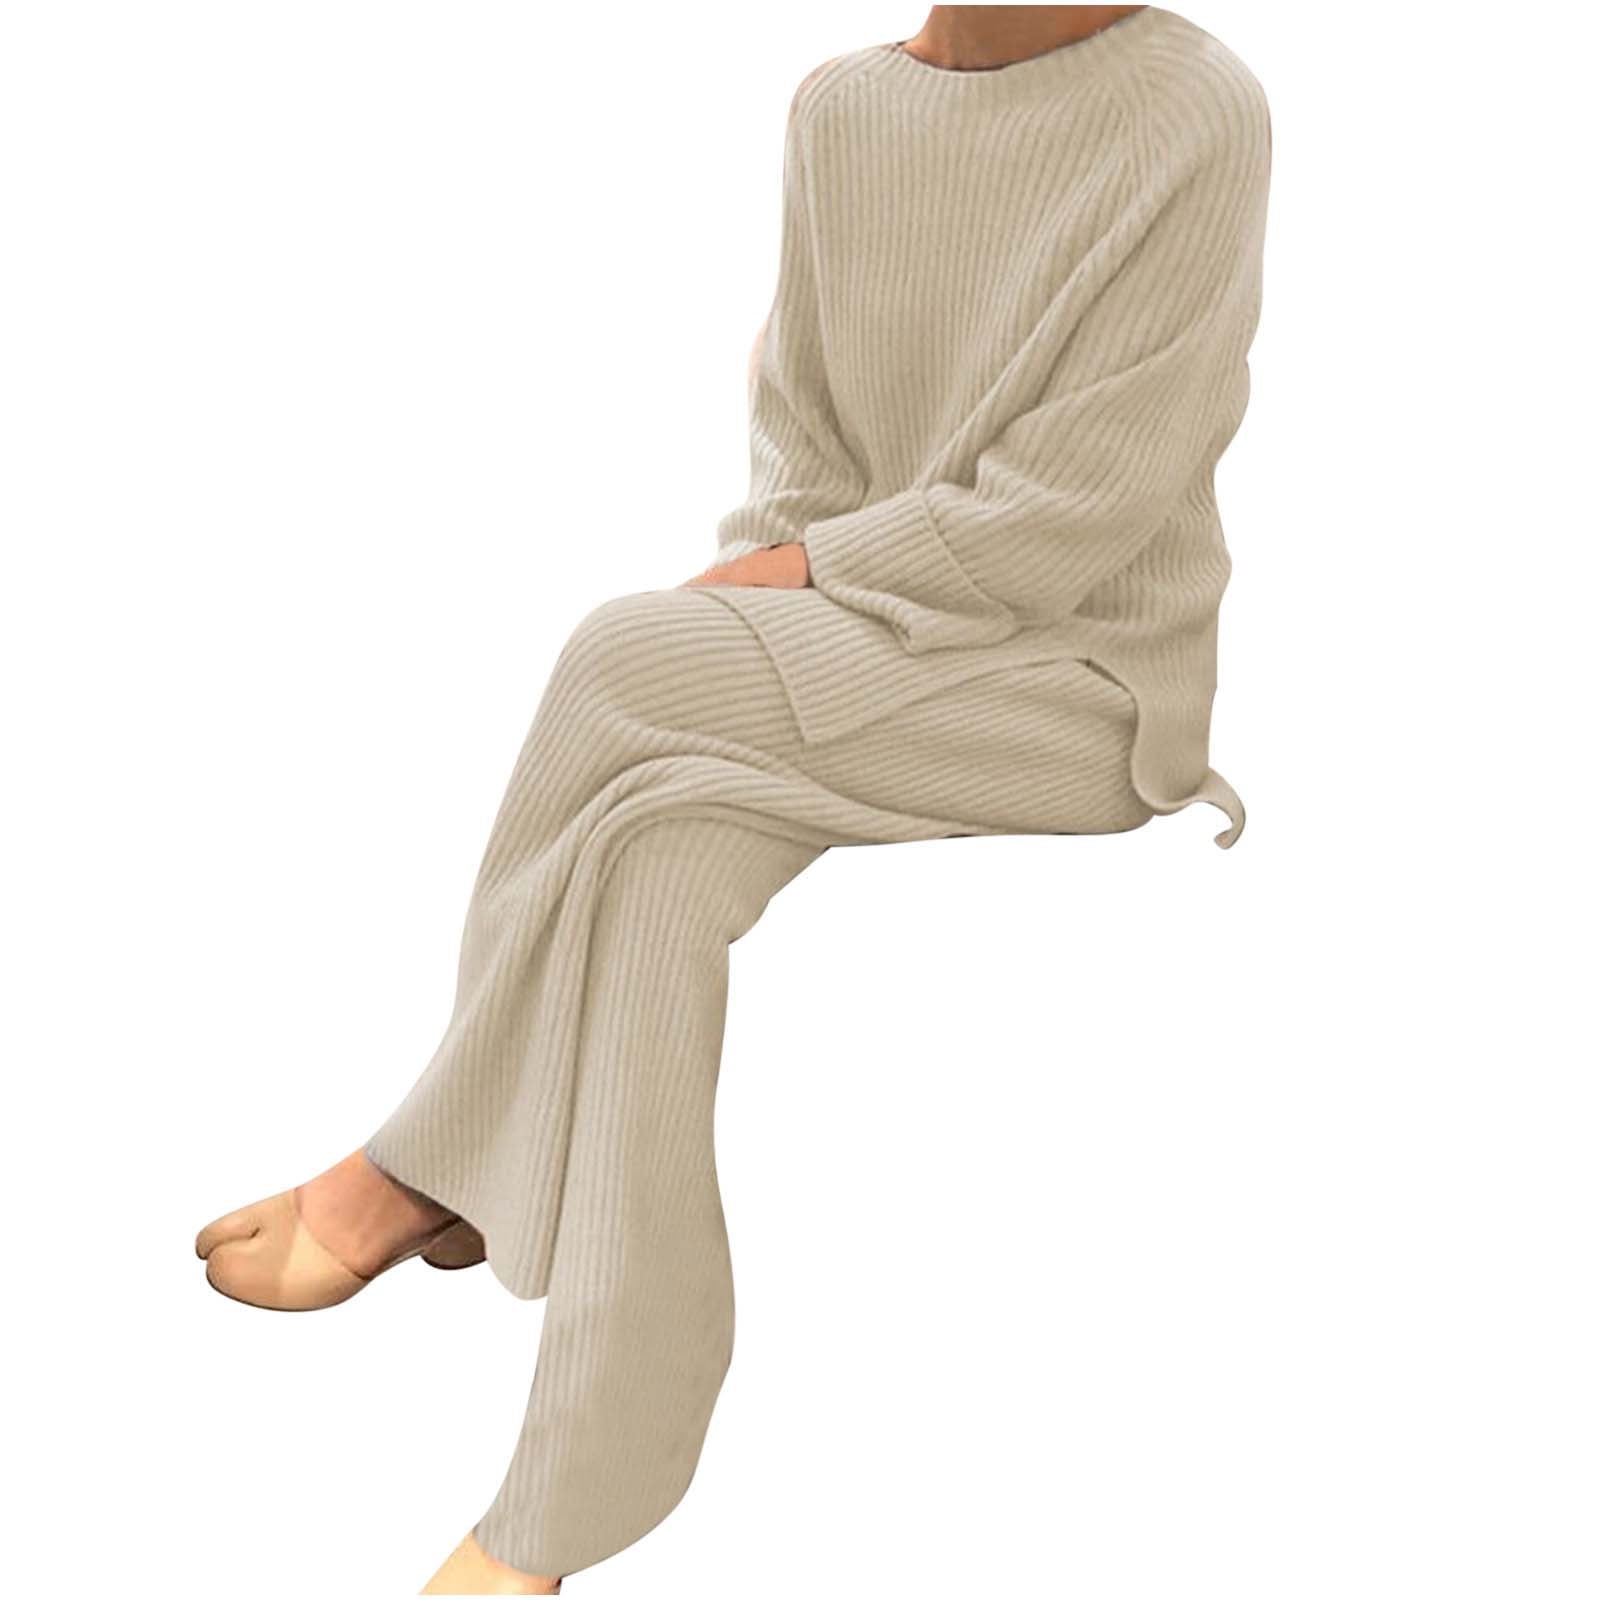 Yievot Fuzzy Pajamas Set for Women Winter Warm Loungewear 2 Piece